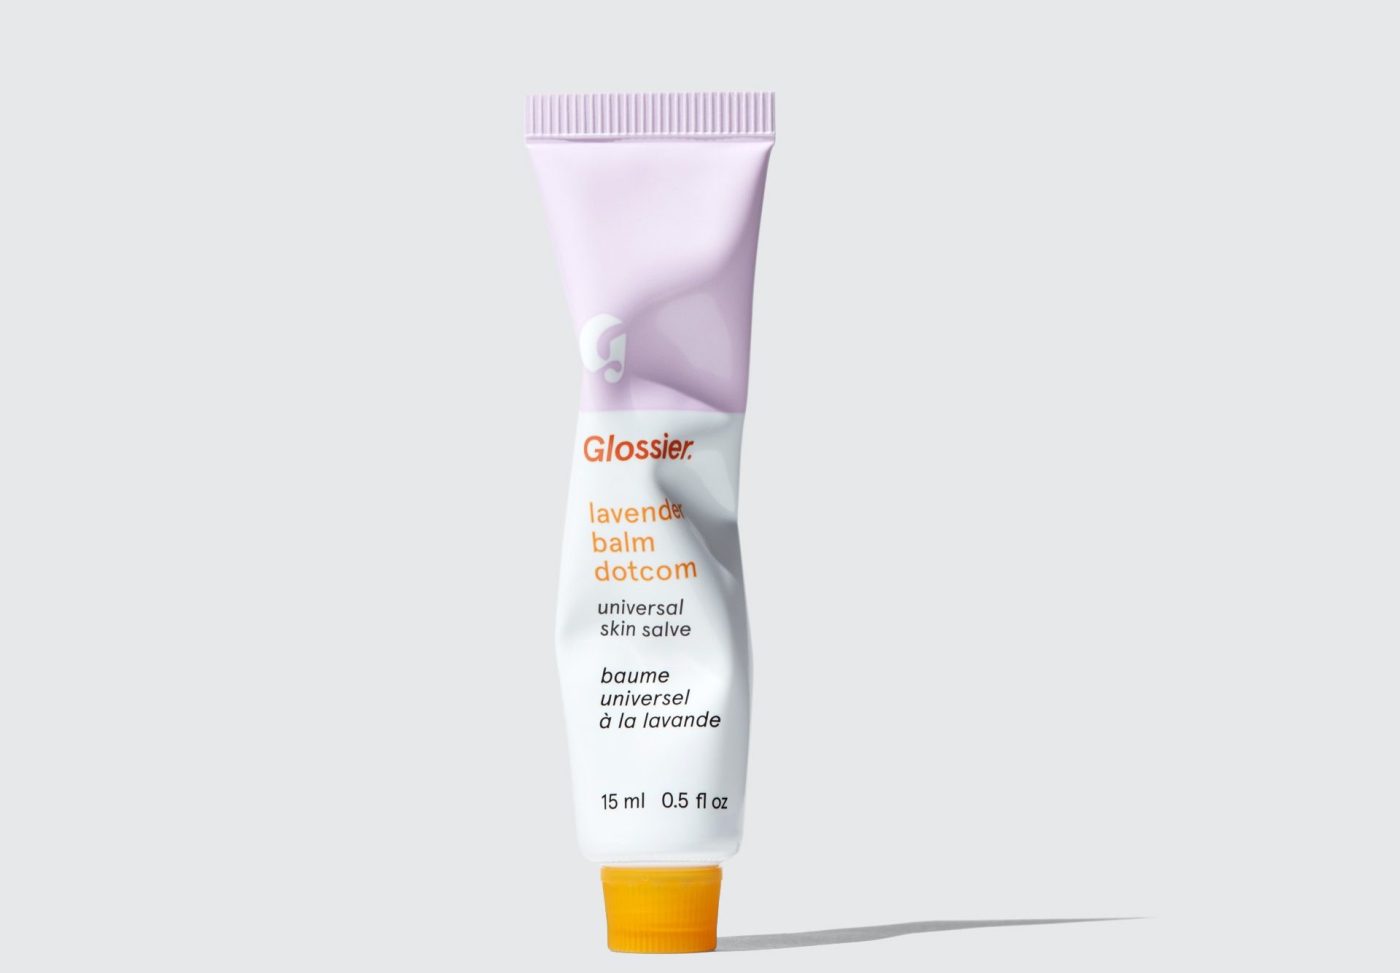 Lavender Balm Dotcom Universal Skin Salve by Glossier, ?10, glossier.com https://www.glossier.com/products/balm-dotcom